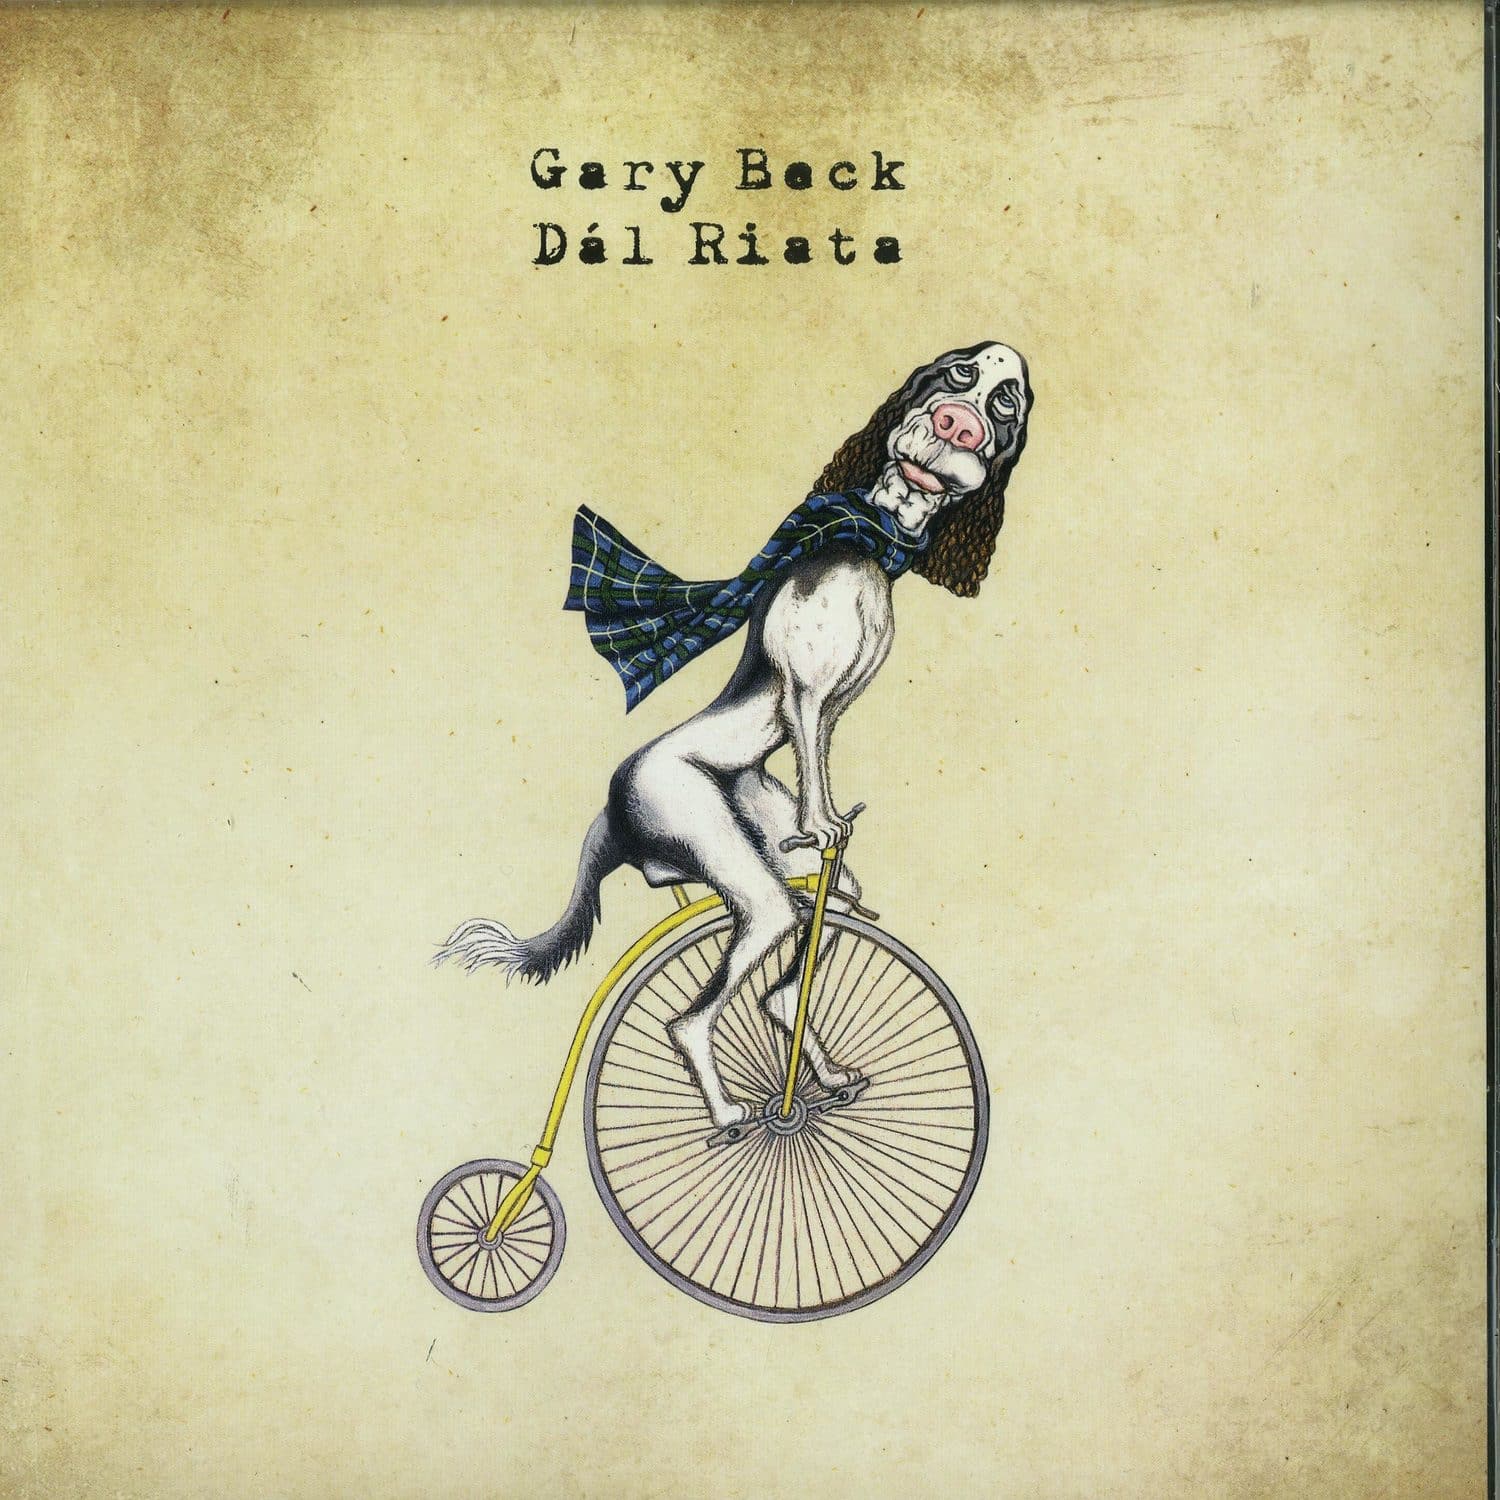 Gary Beck - DAL RIATA LP 